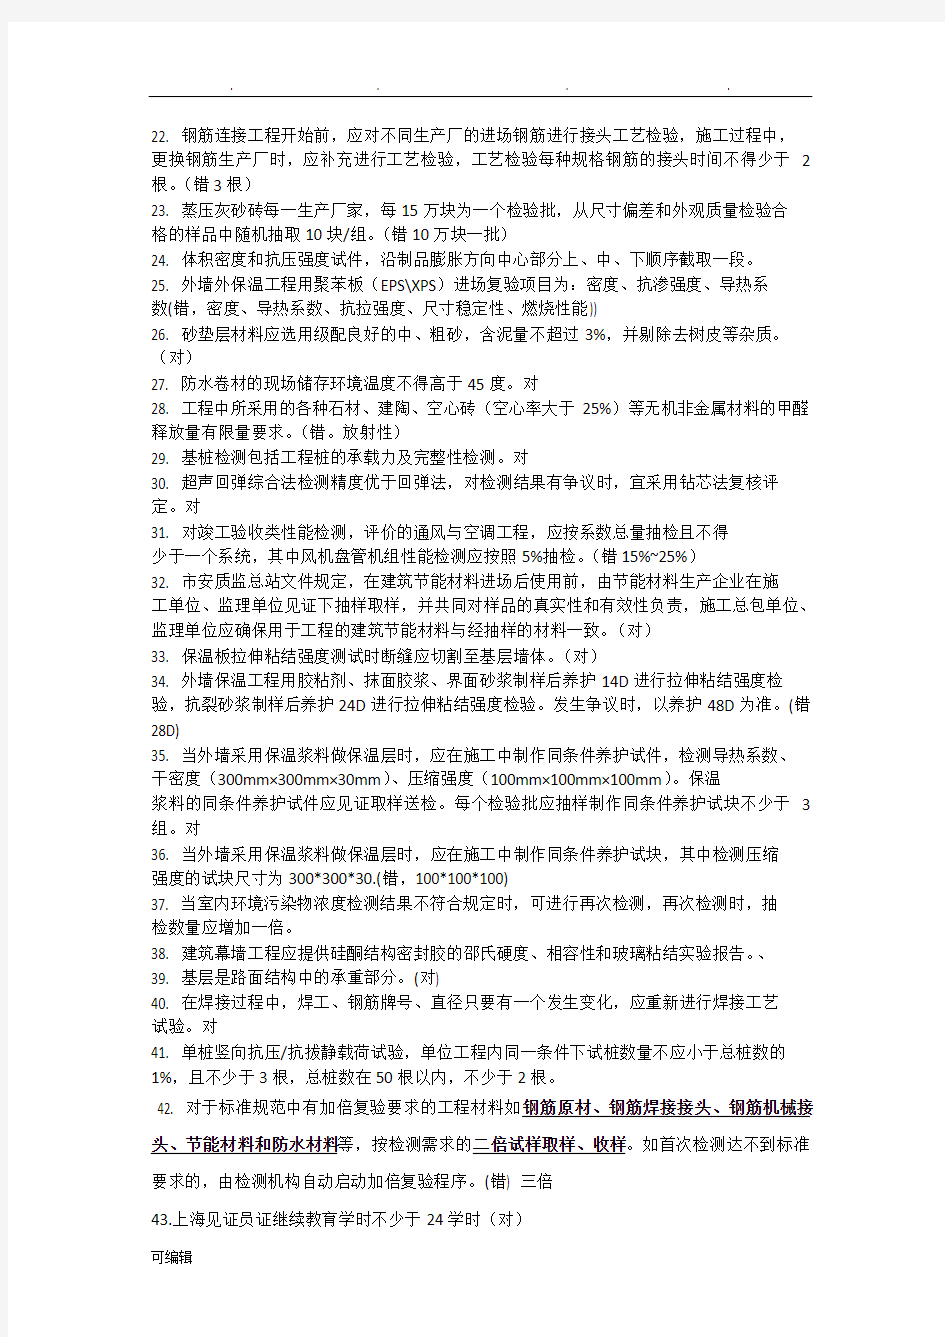 2018年上海见证员考试题